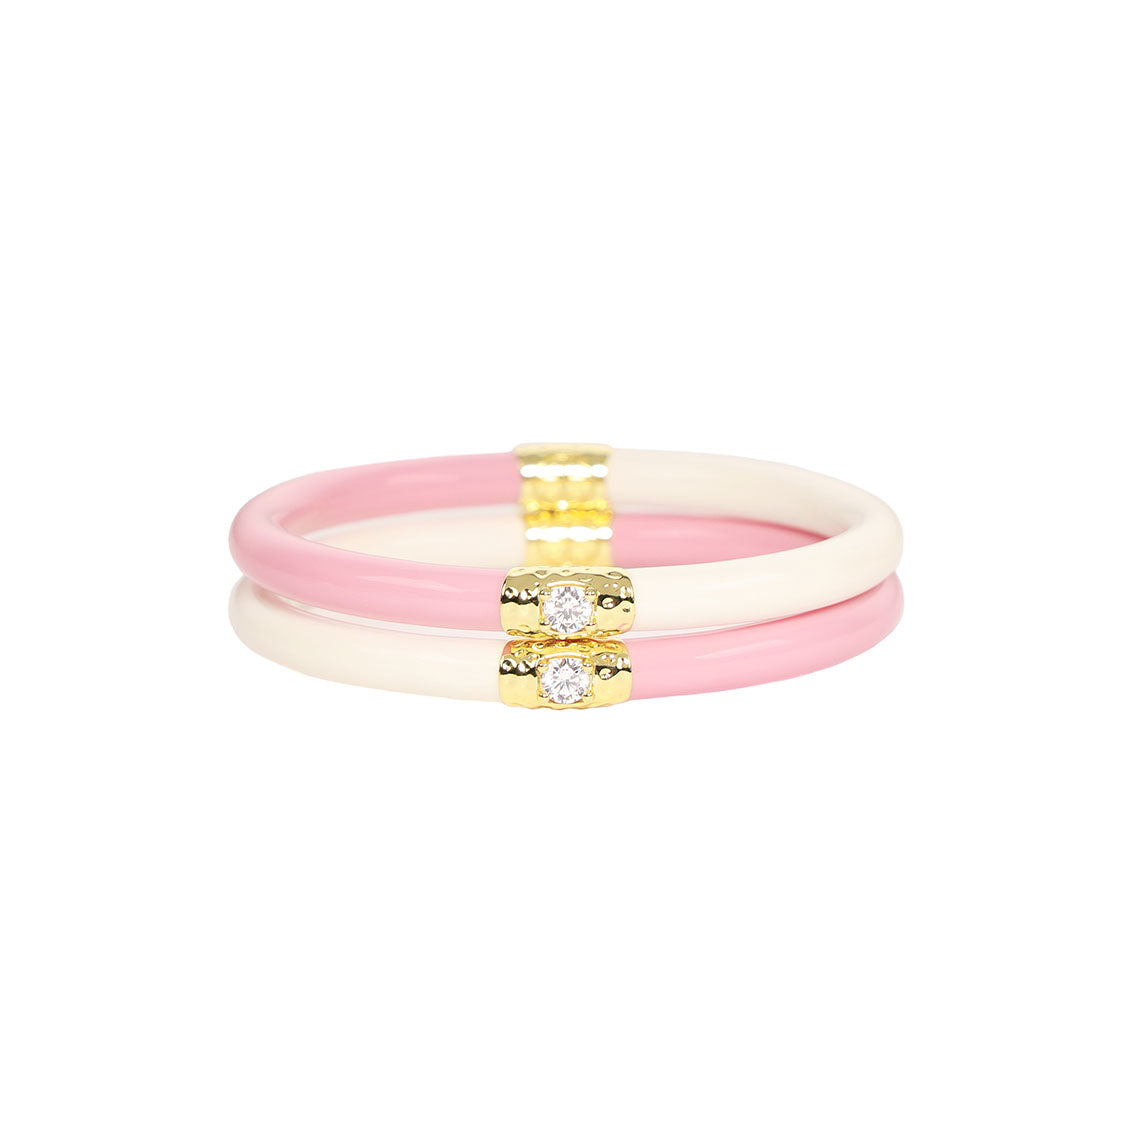 Pink and Ivory Baby Bangle Bracelet | Infant Jewelry | BuDhaGirl